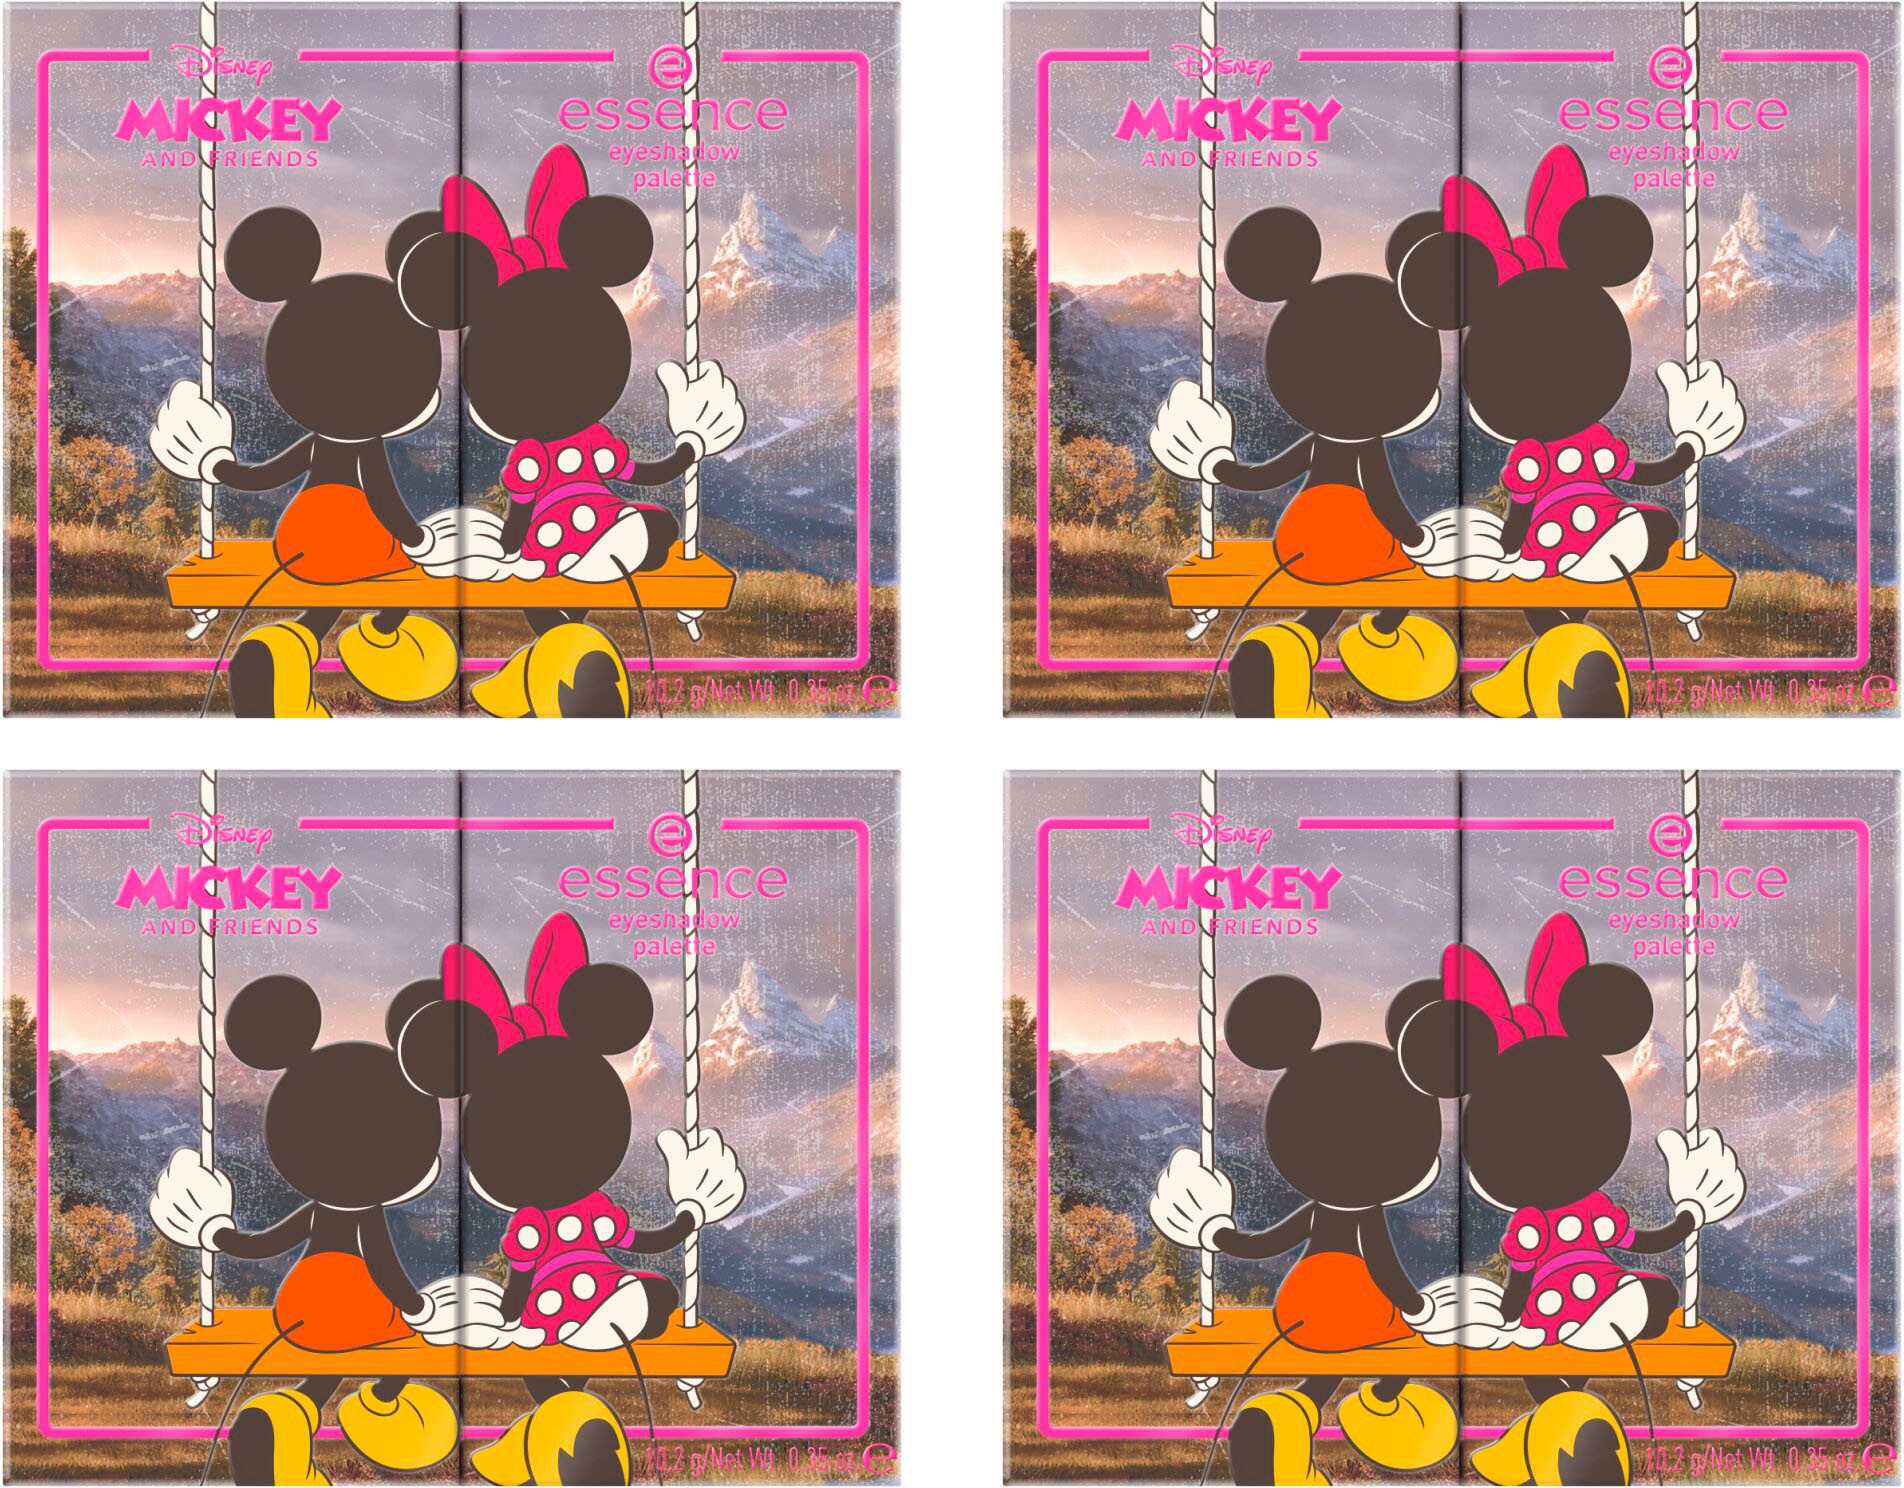 Essence Lidschatten-Palette »Disney für Augen-Make-Up abwechslungsreiche kaufen eyeshadow Mickey Looks palette«, Friends and online